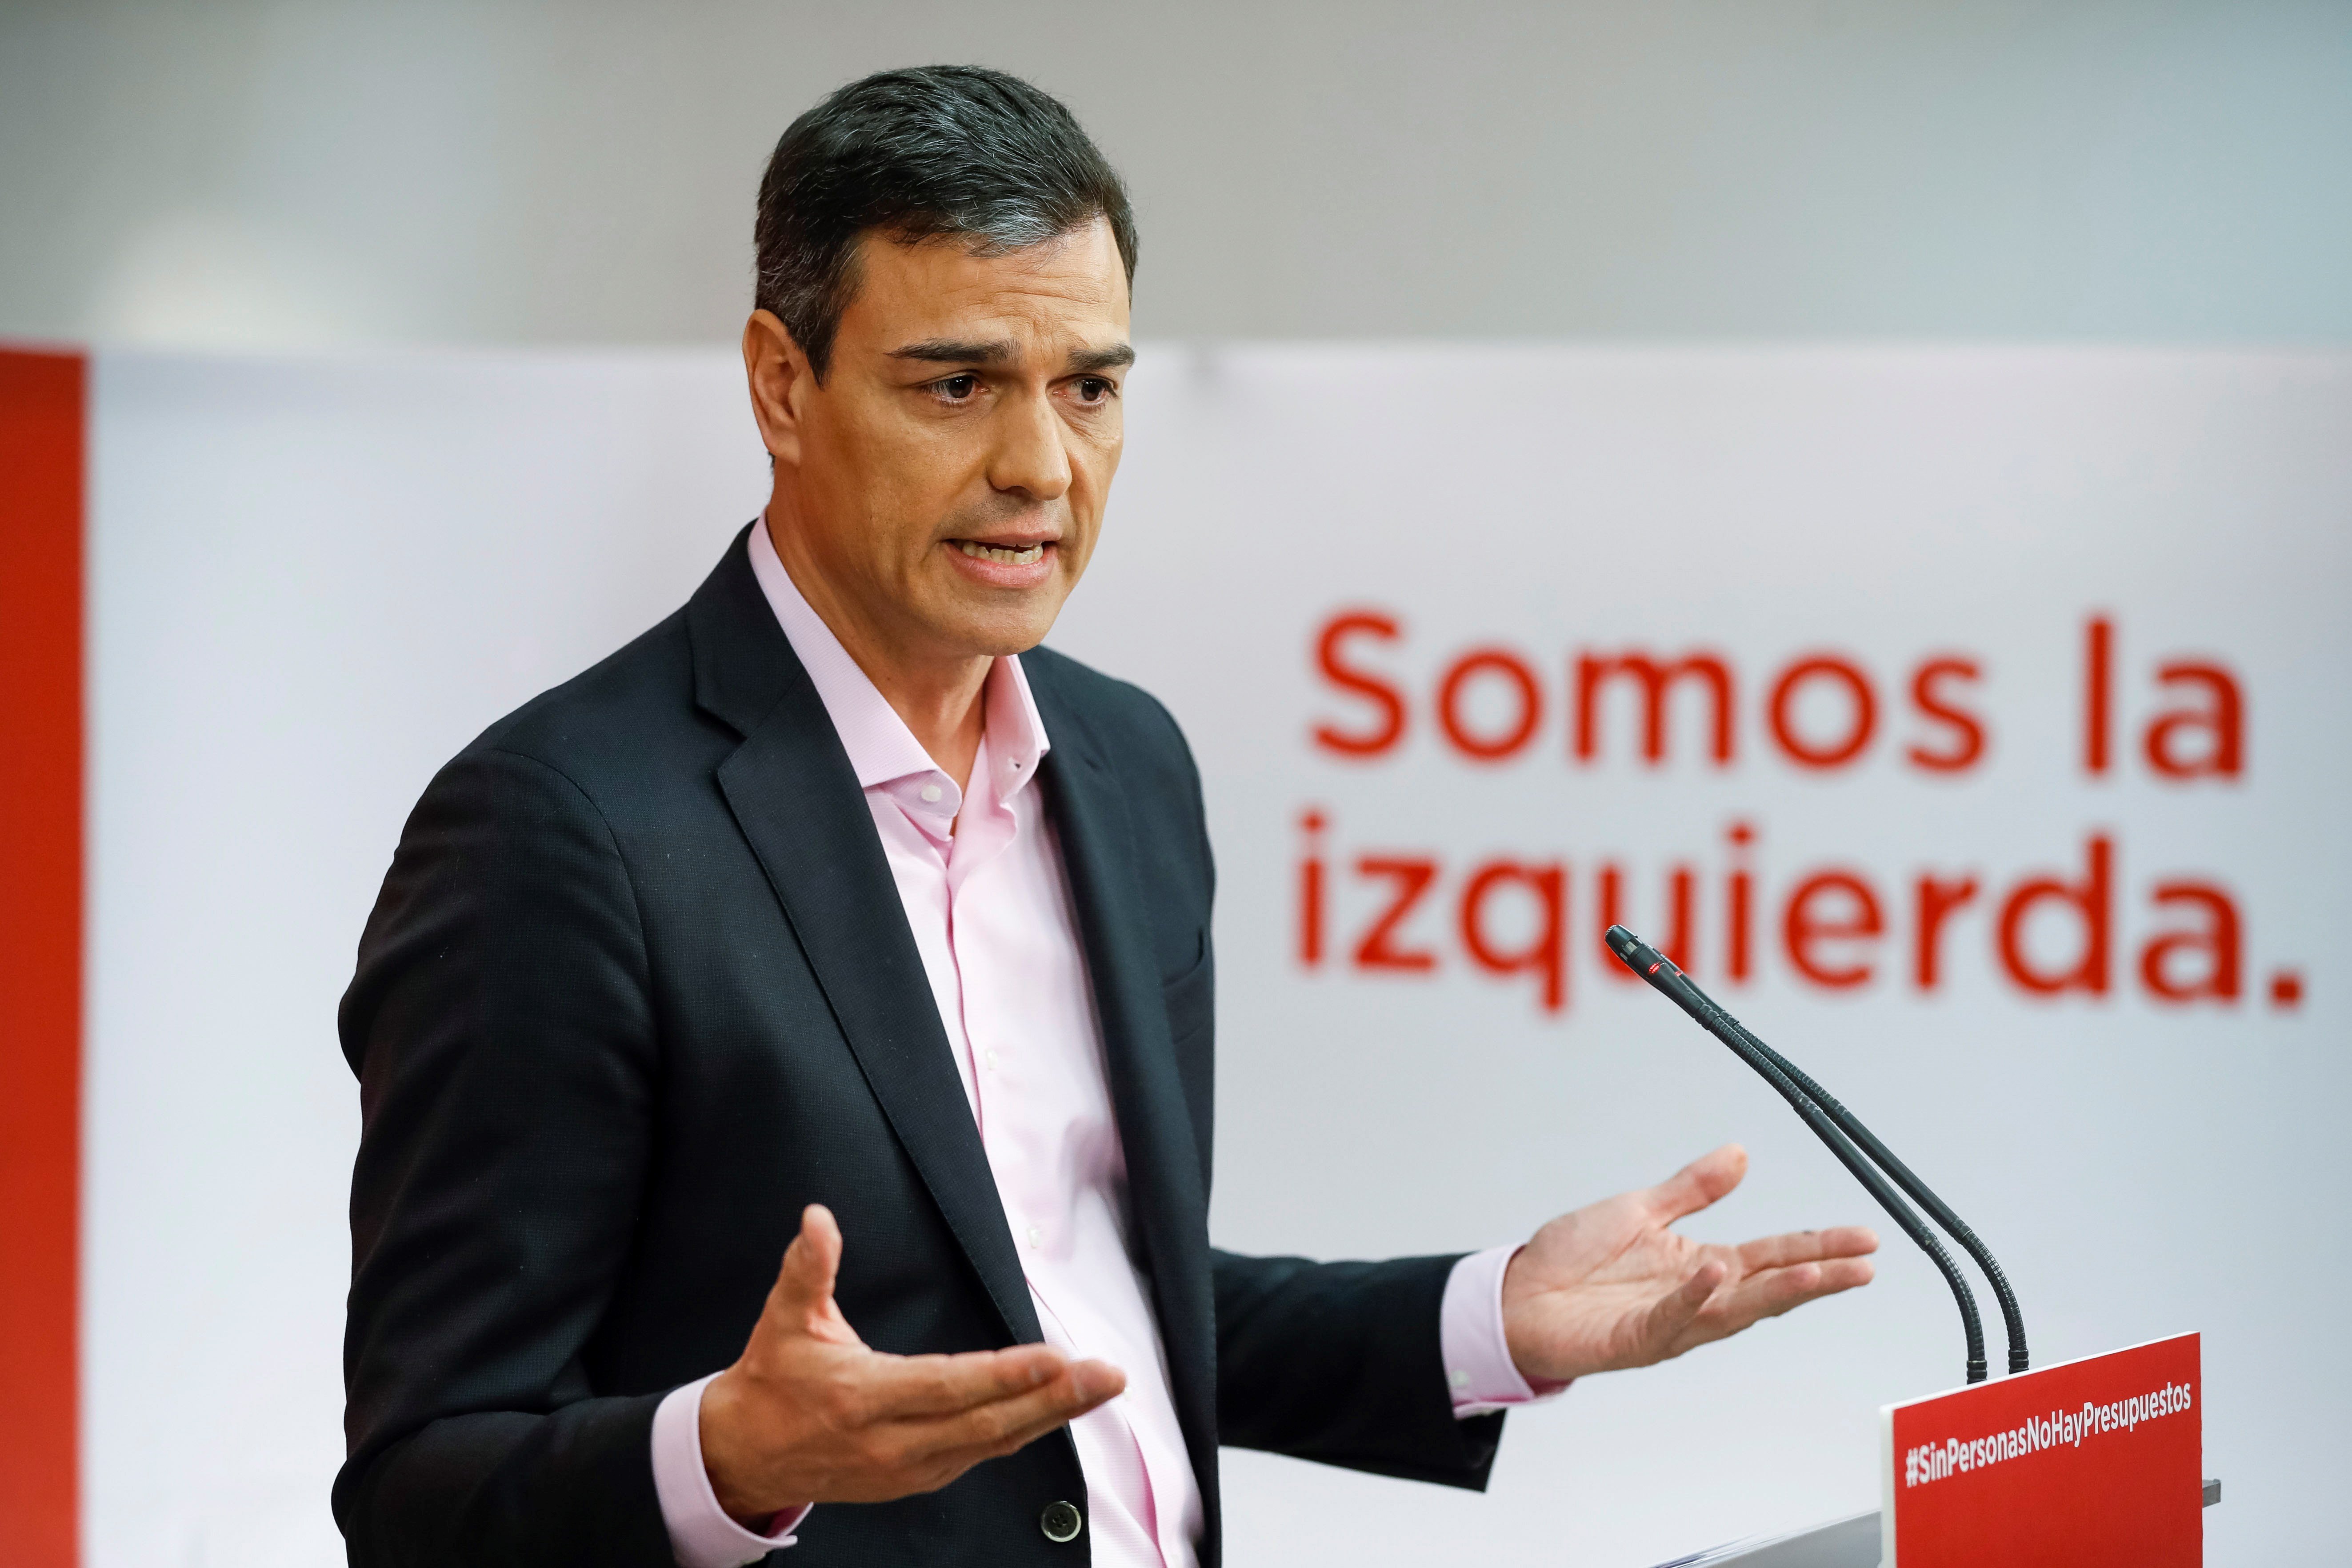 Sánchez rebutja els pressupostos perquè busquen un Estat "low cost"